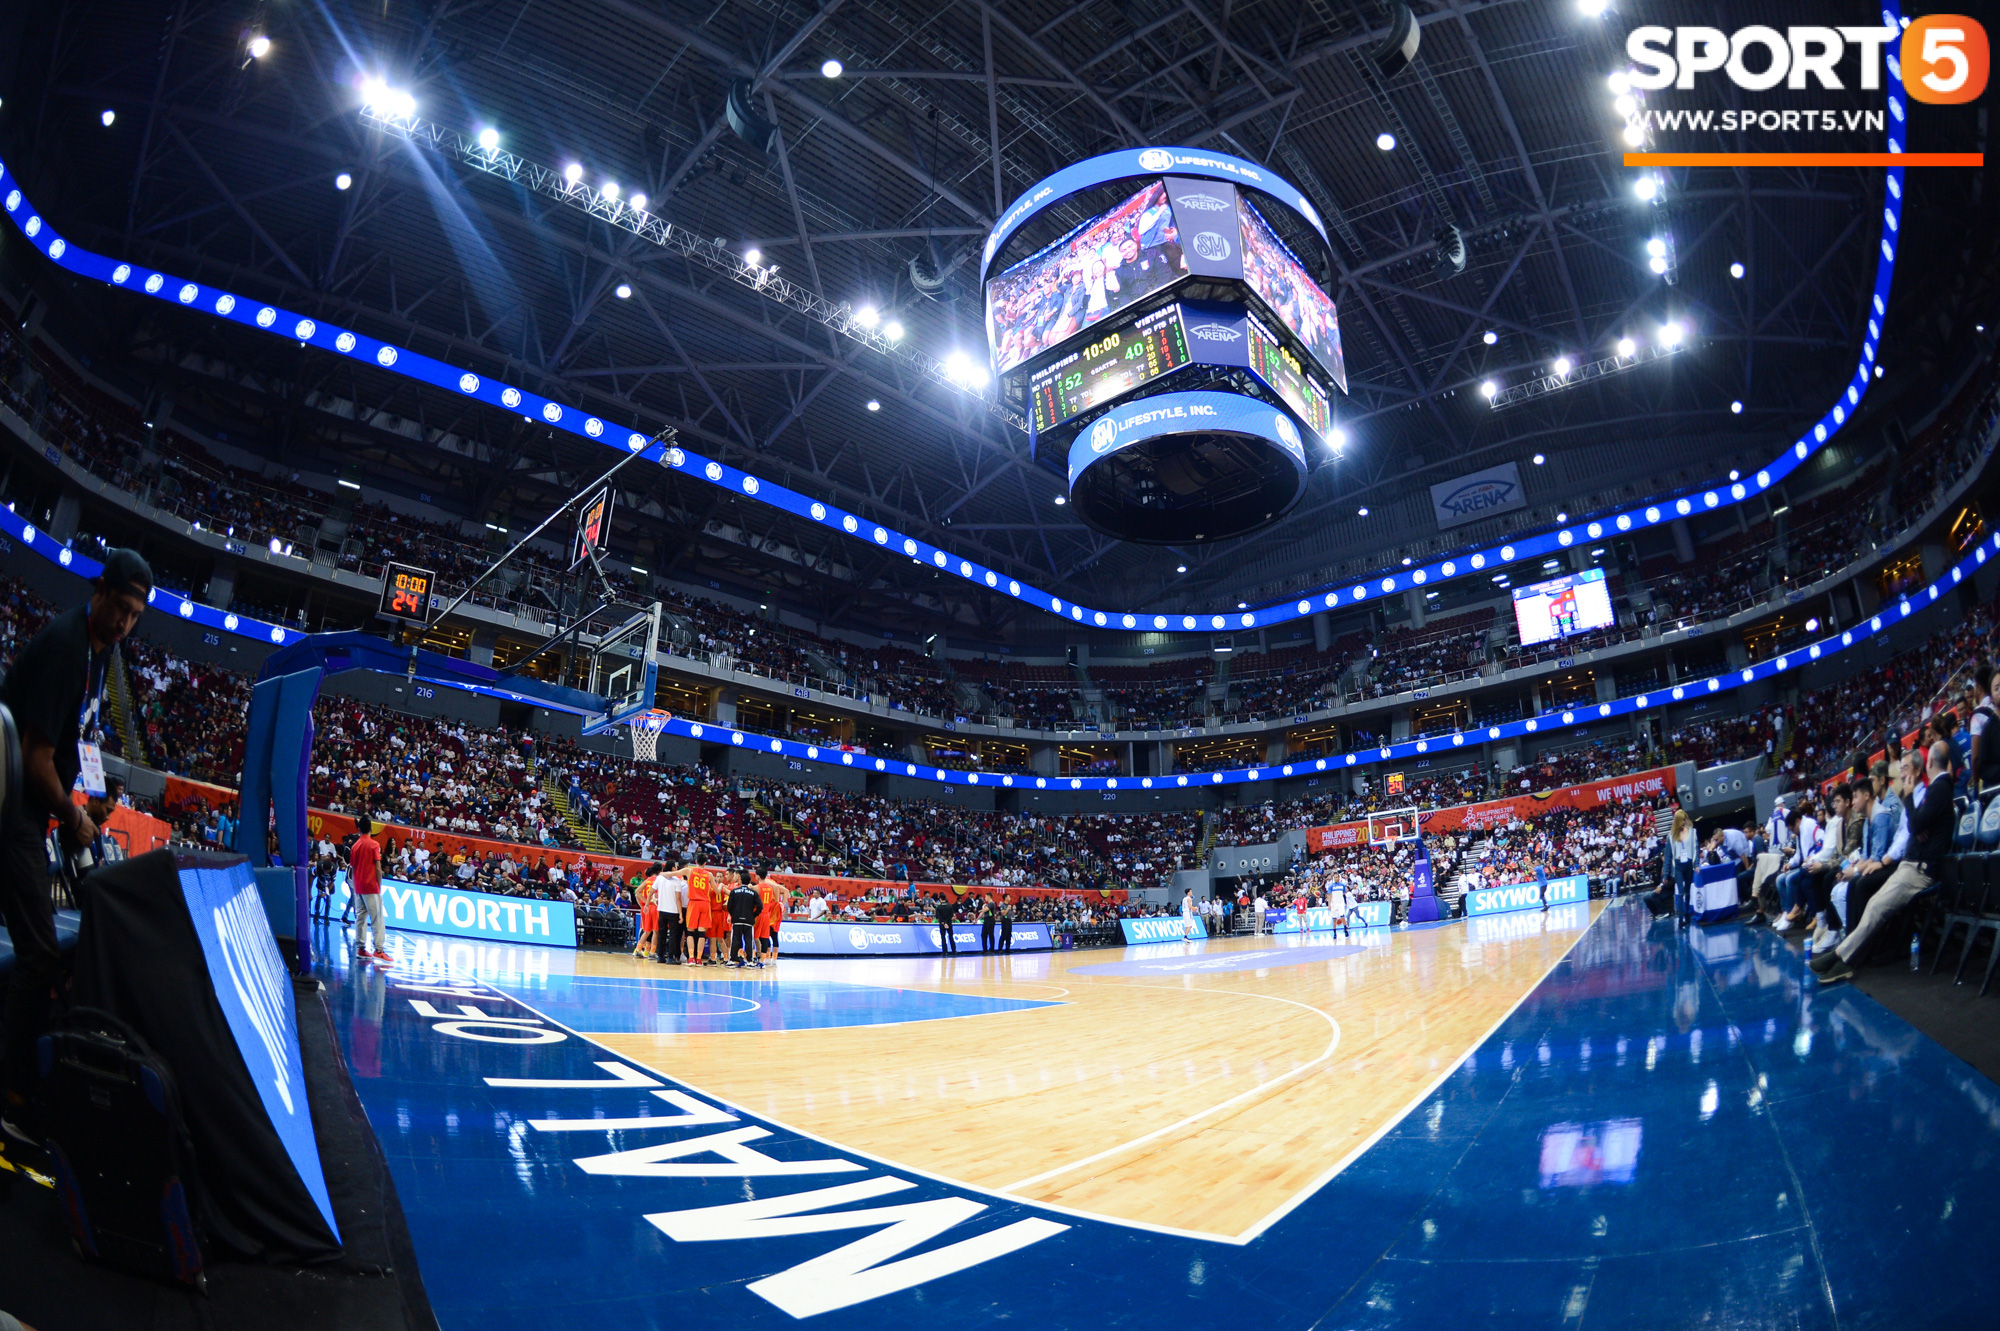 Choáng ngợp trước vẻ hào nhoáng của nhà thi đấu và sức ép từ 15.000 CĐV chủ nhà Philippines mà tuyển bóng rổ Việt Nam phải đối mặt - Ảnh 1.